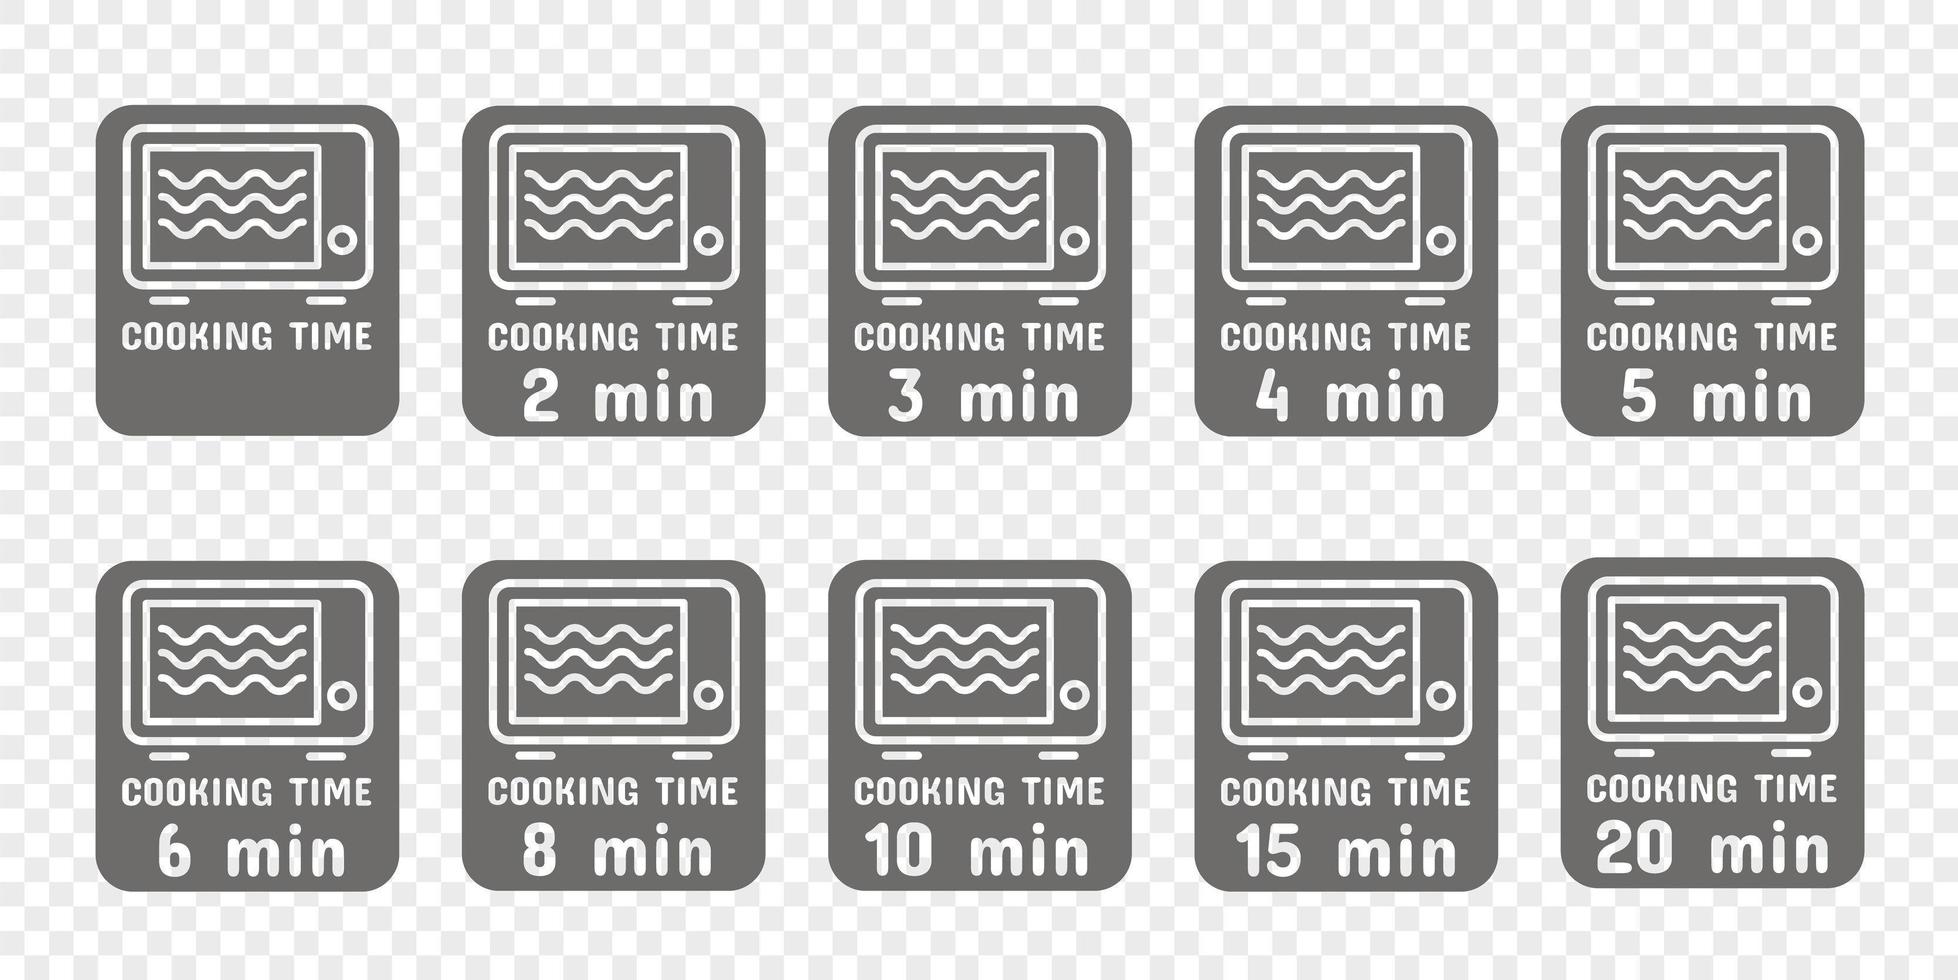 temps de cuisson et de chauffe au micro-ondes. symboles et icônes pour les instructions. vecteur